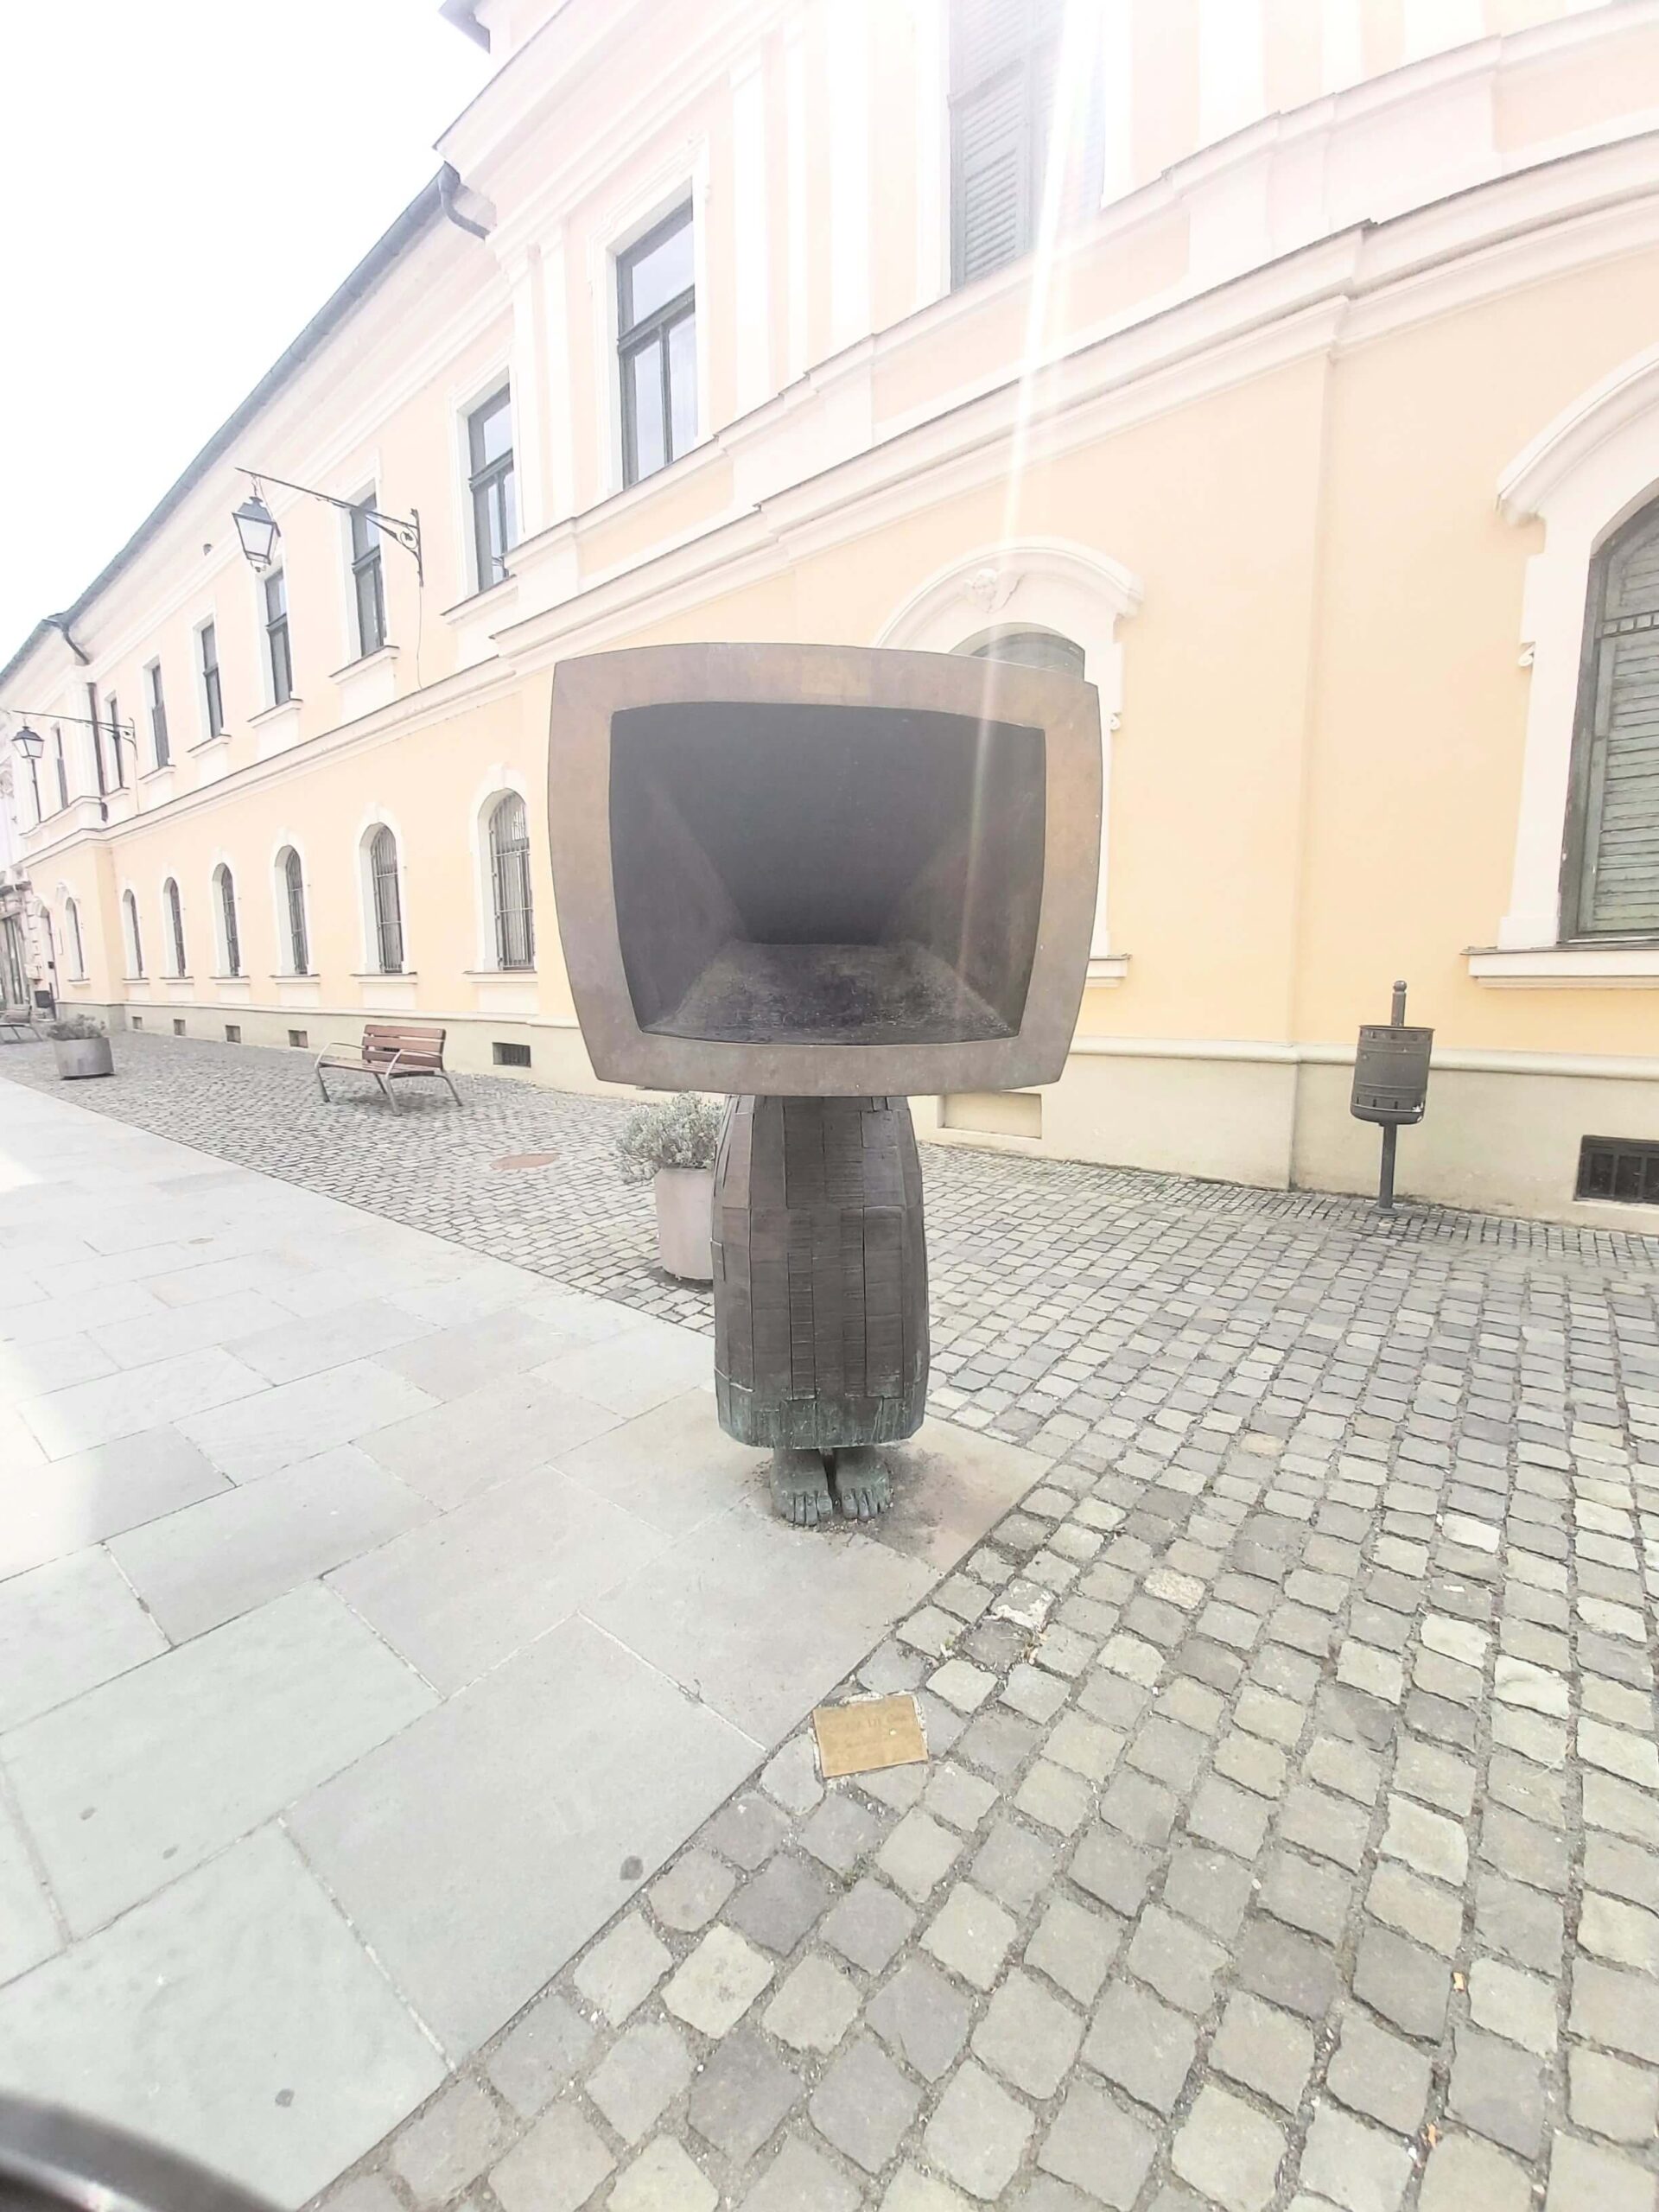 Speaker statue in Timisoara, Romania